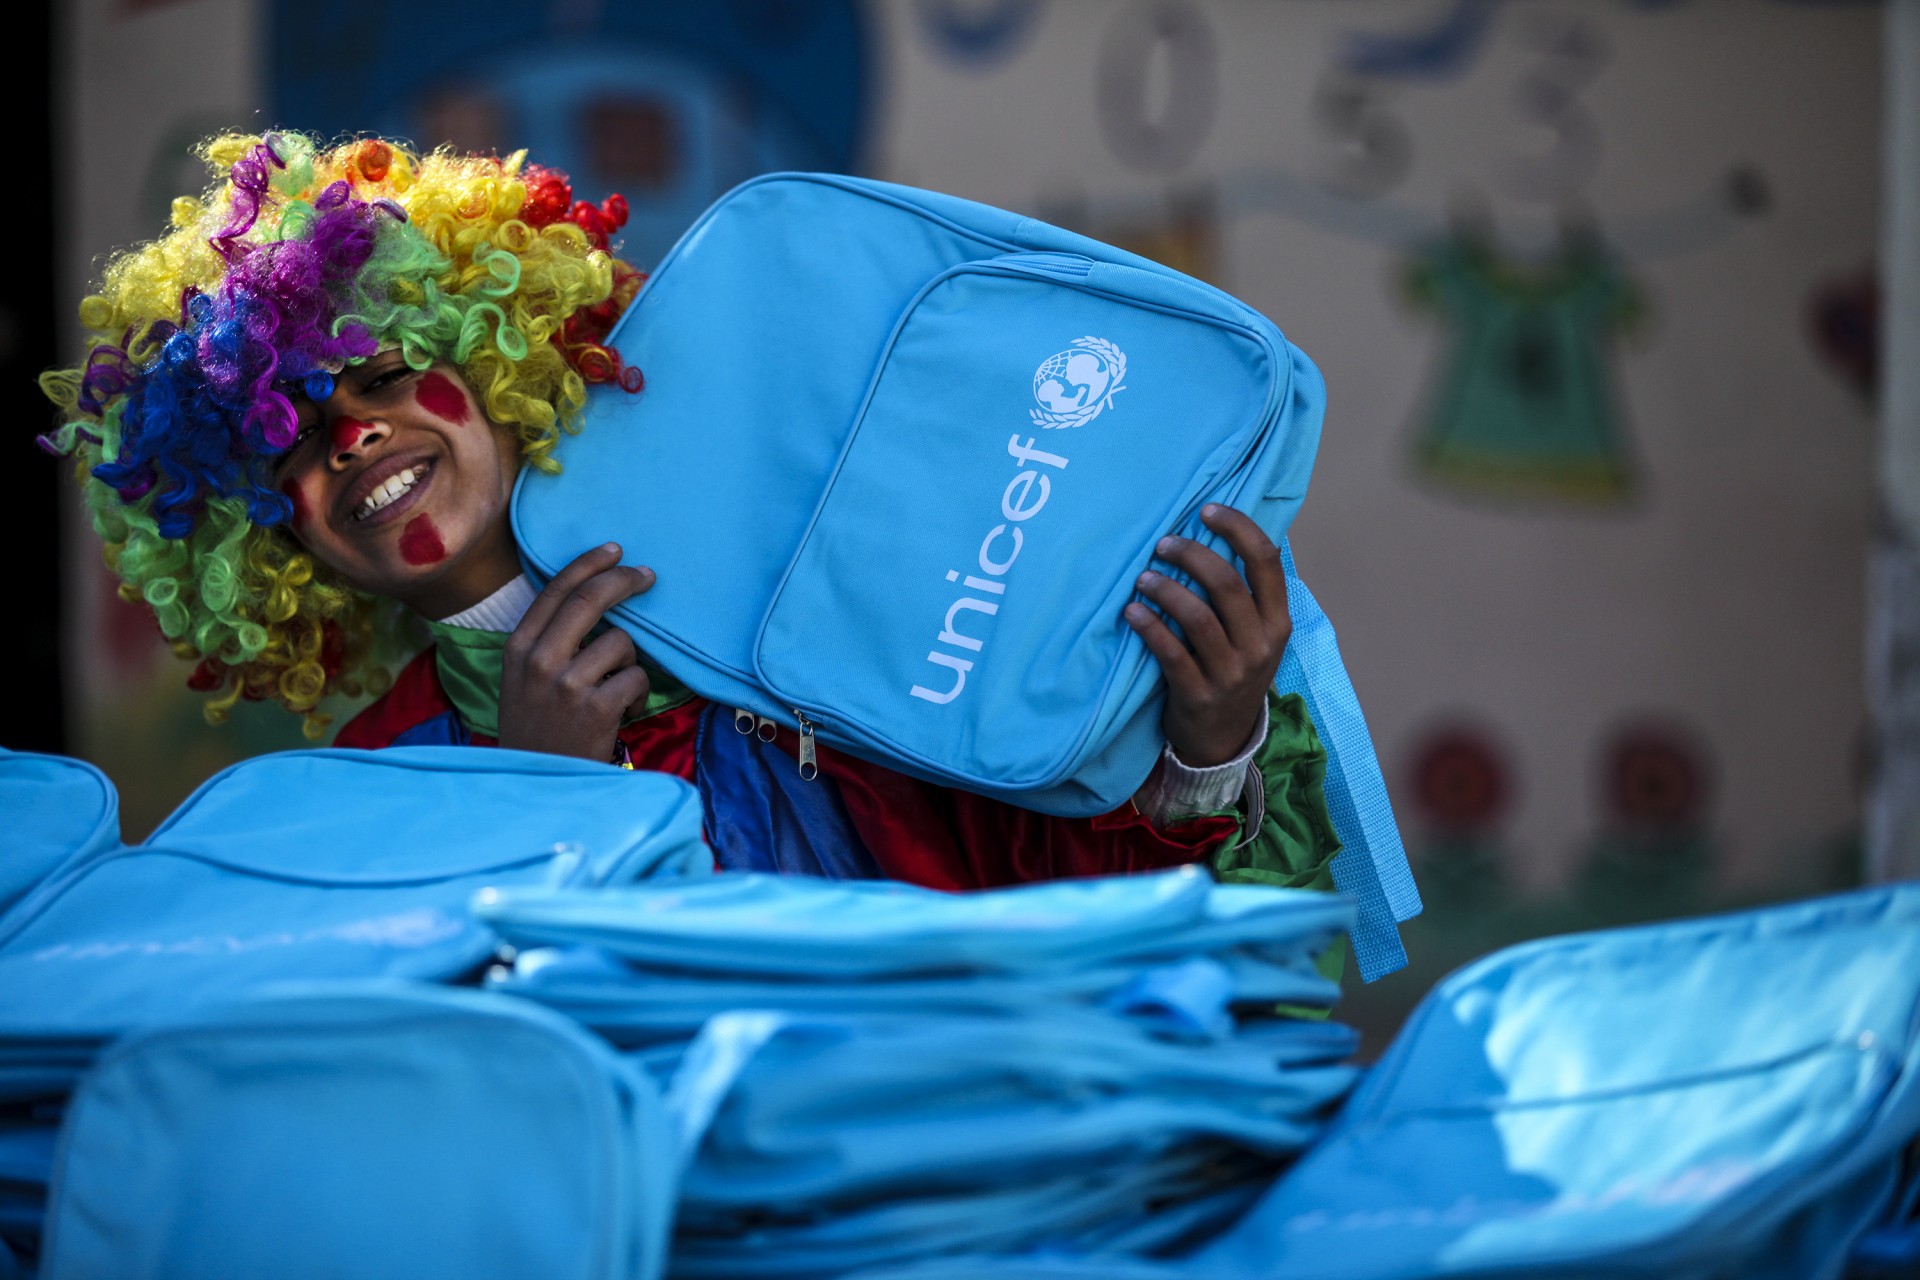 UNICEF | her çocuk için